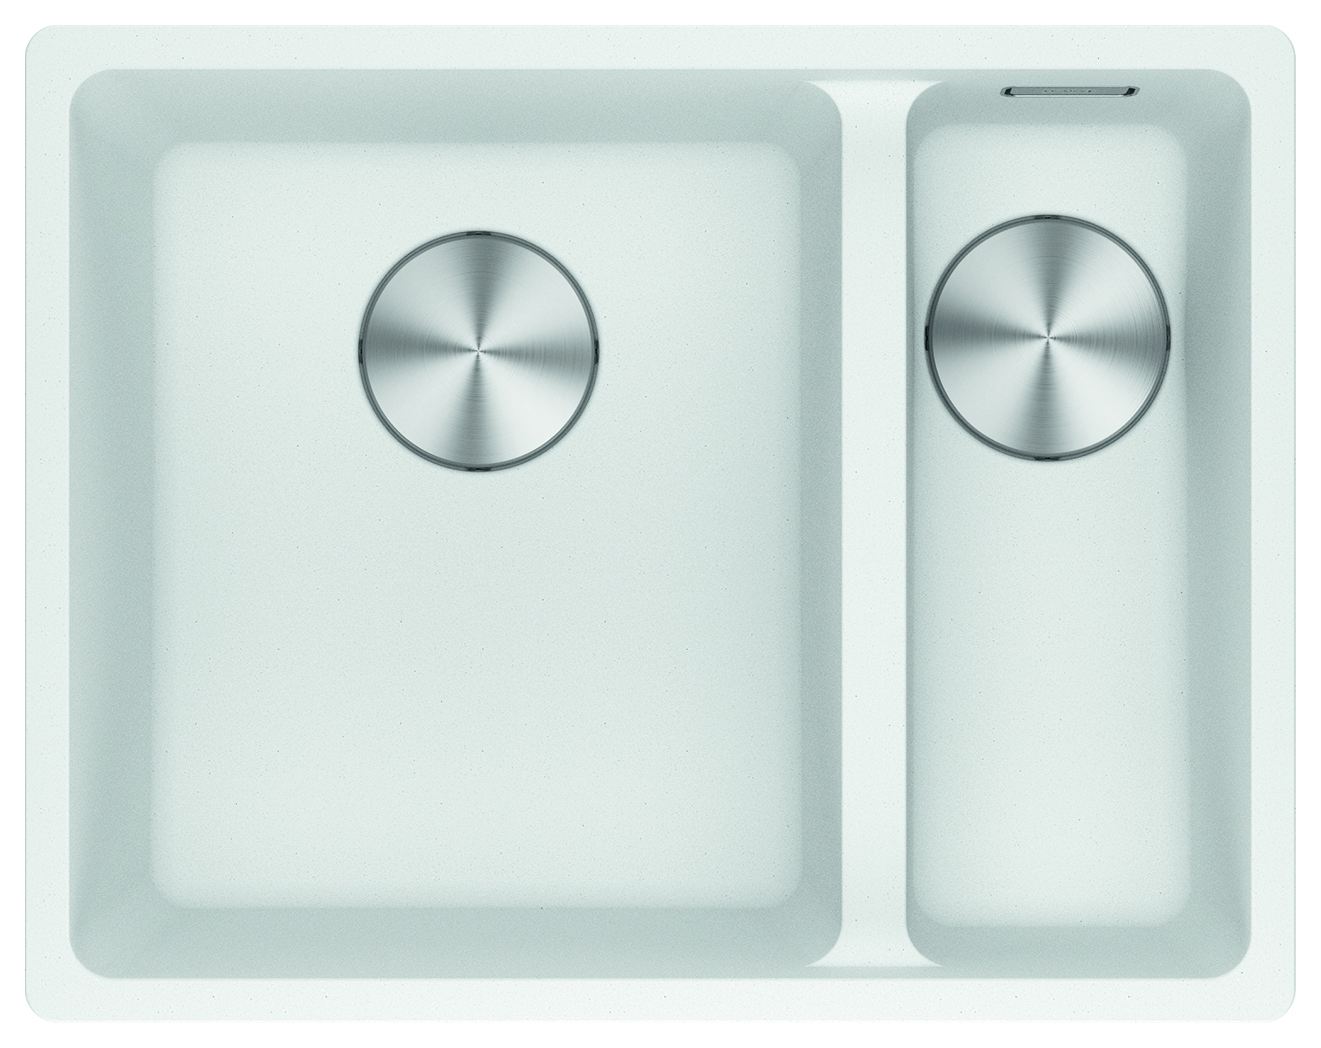 Franke Maris Granite 1.5 Bowl Undermount Kitchen Sink RH - White